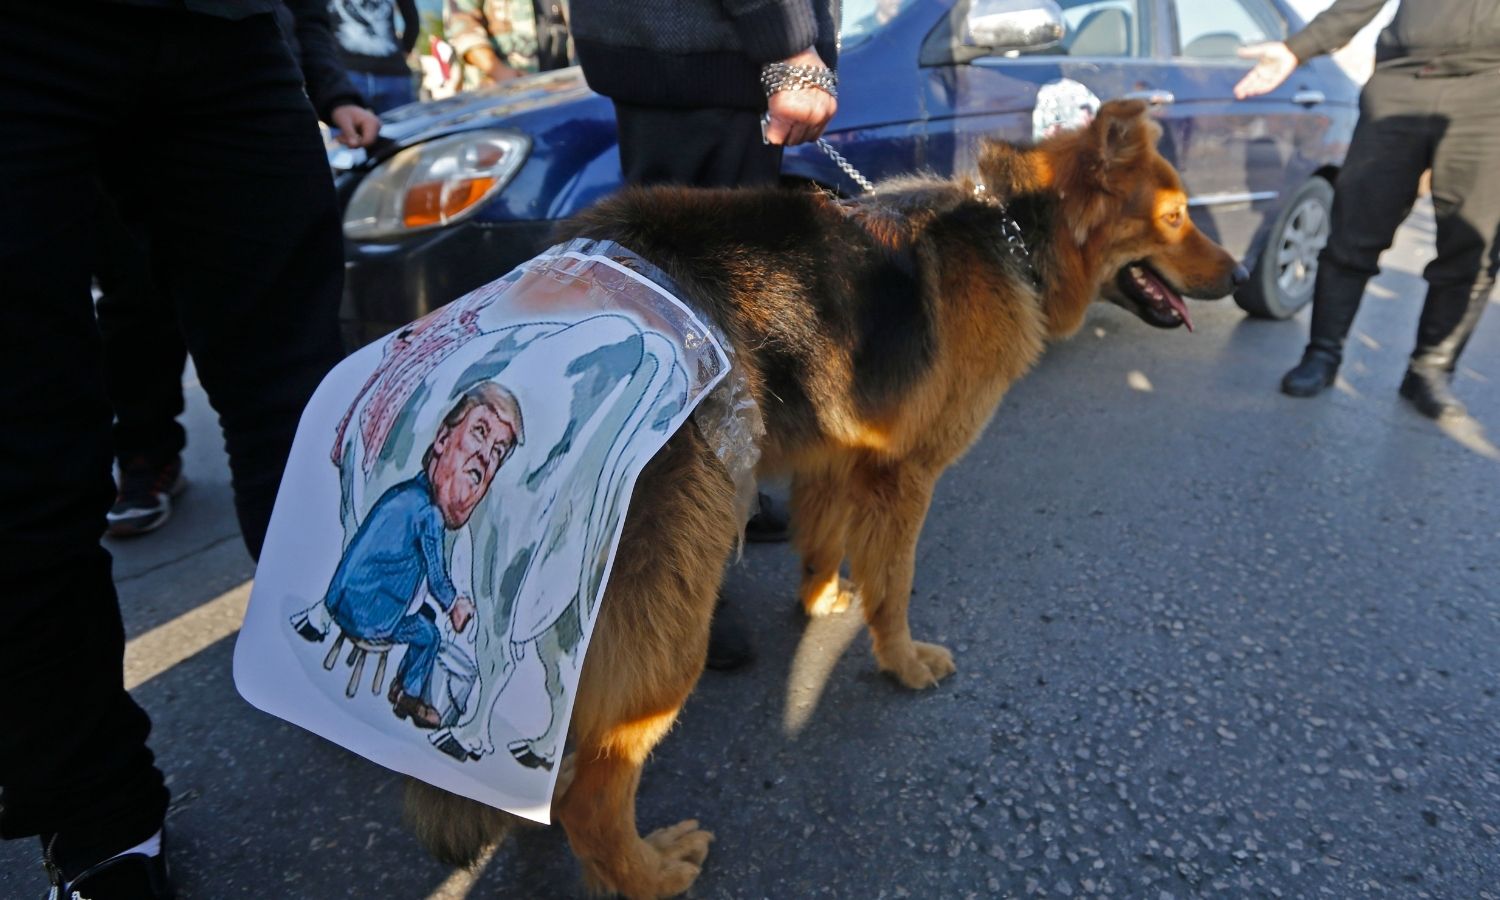 صورة كاريكاتورية للرئيس الأمريكي السابق دونالد ترامب على ظهر كلب خلال تجمع في ساحة الأمويين بدمشق - 14 نيسان 2018 (AFP)